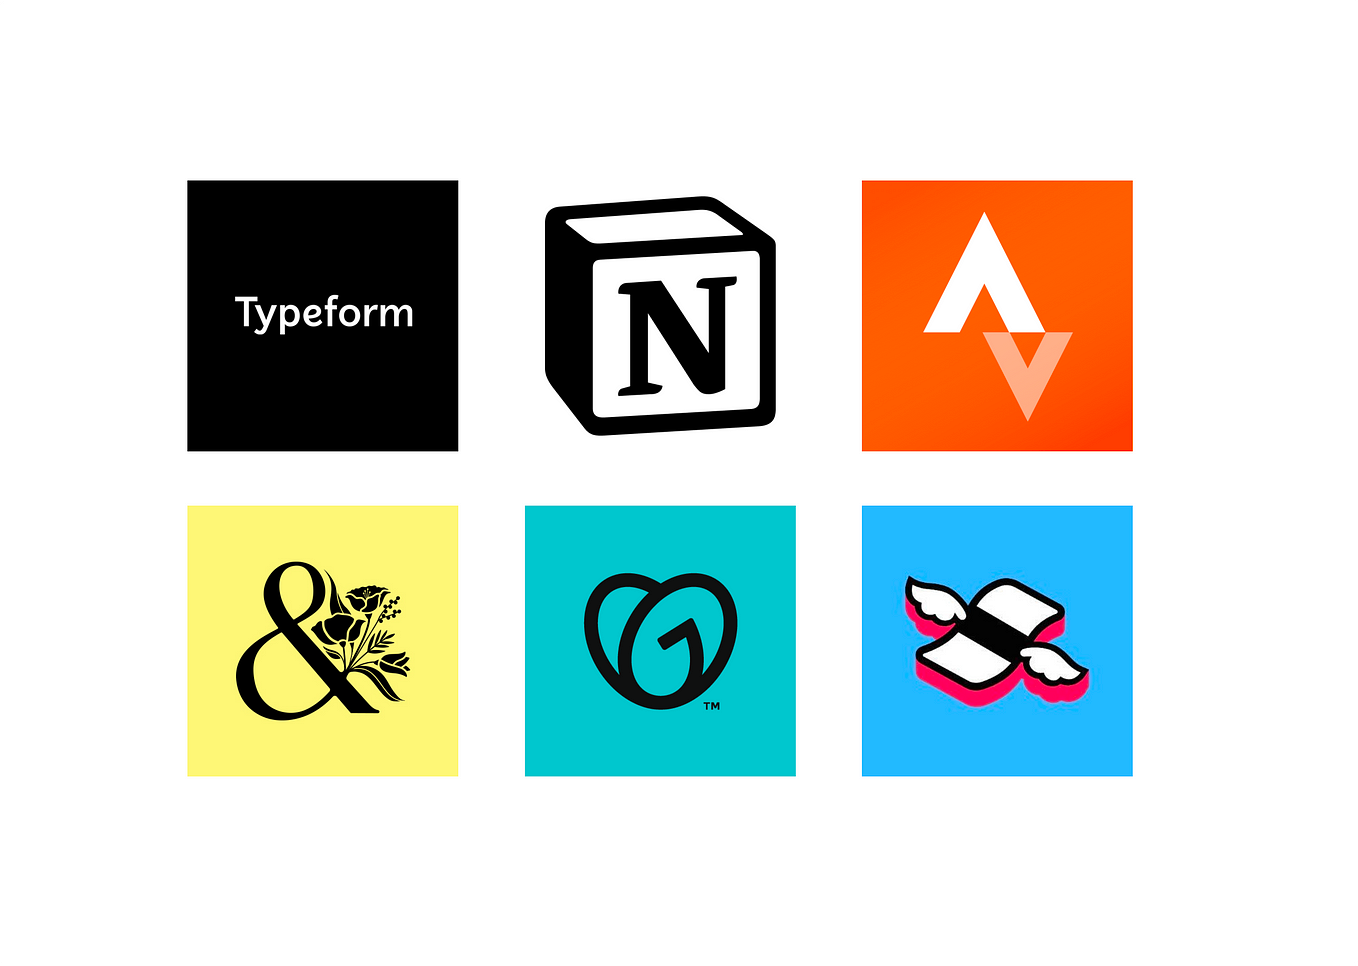 Imagen de 6 productos del artículo: Typeform, Notion, Strava, Bloom & Wild, GoDaddy, Finimize